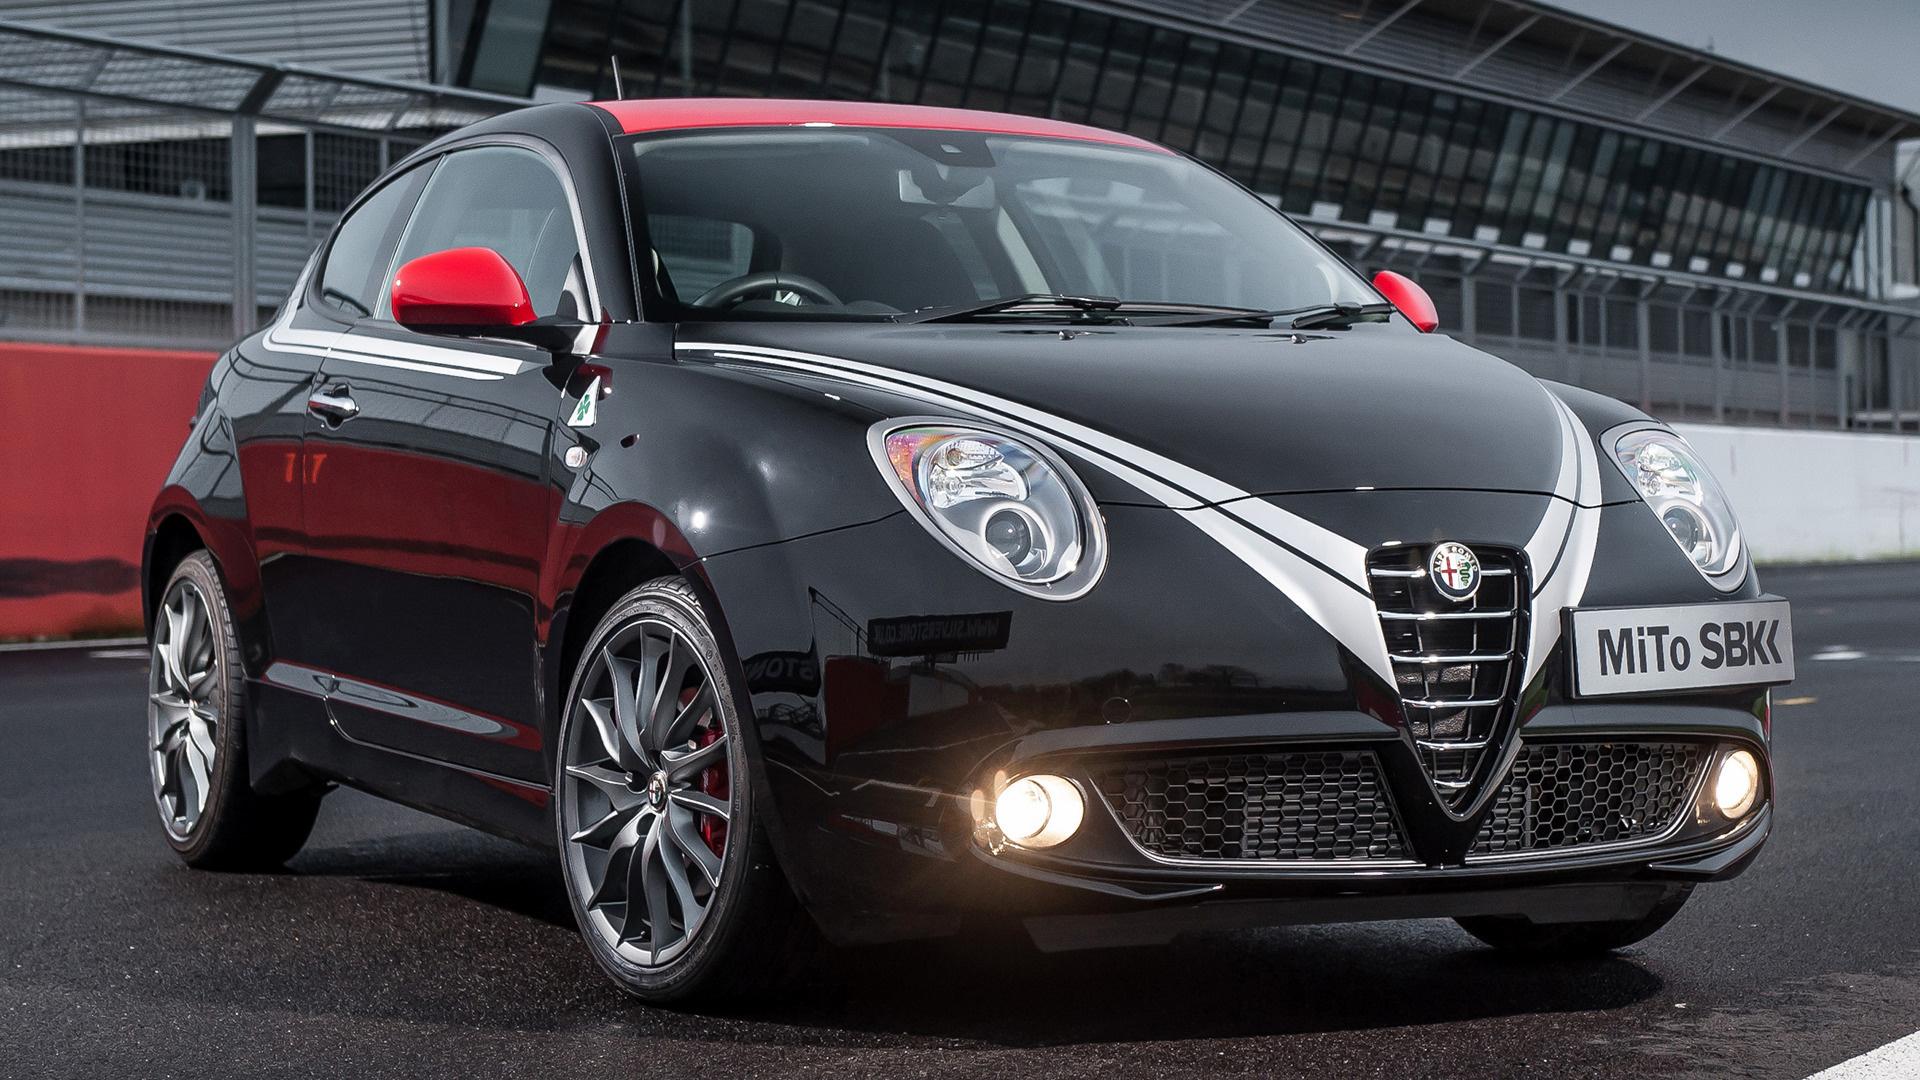 Alfa Romeo MiTo SBK Limited Edition (UK) and HD